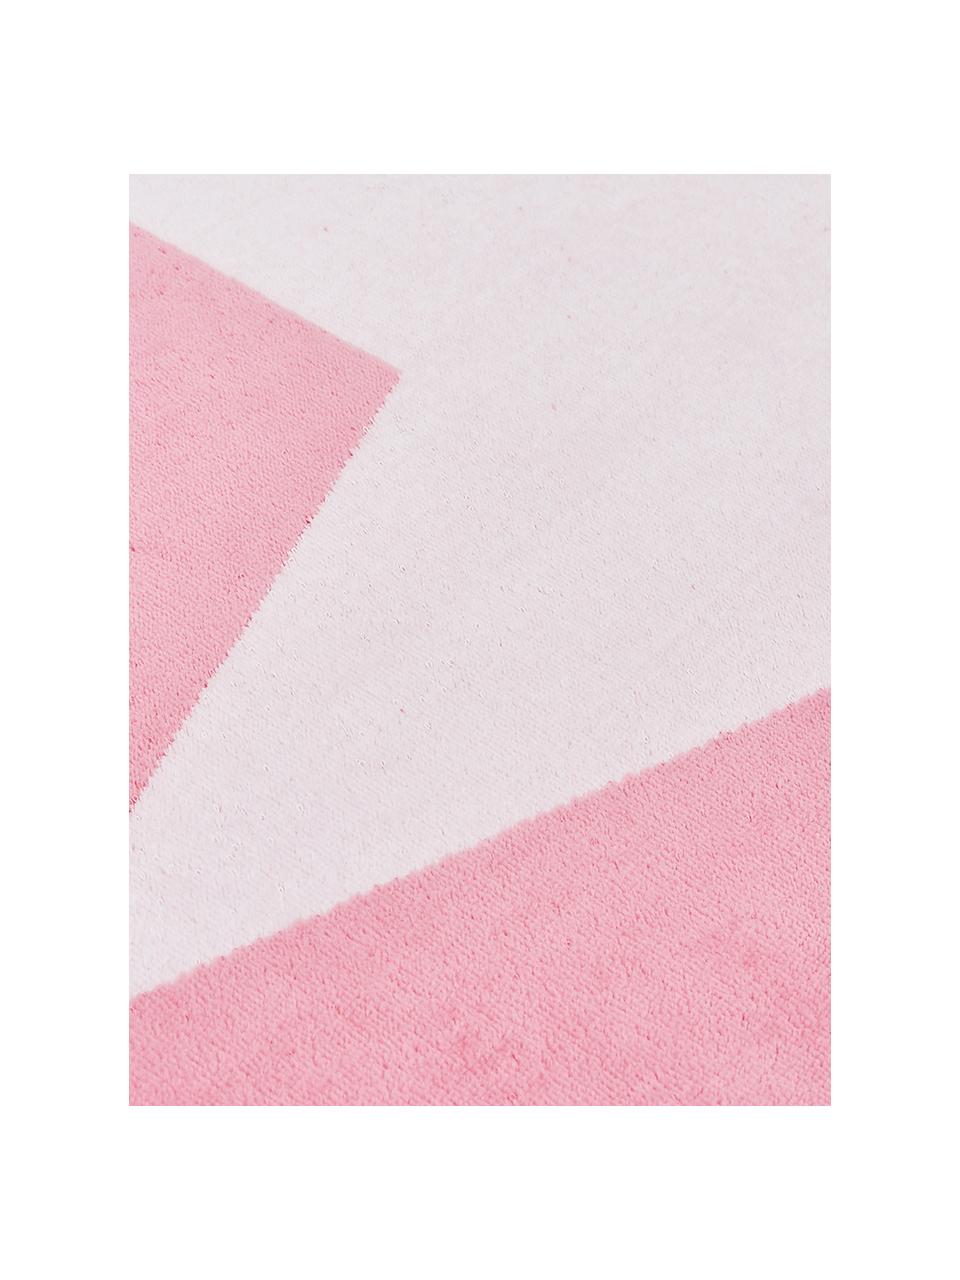 Strandlaken Spork, Katoen
Lichte kwaliteit 380 g/m², Roze, wit, 80 x 160 cm